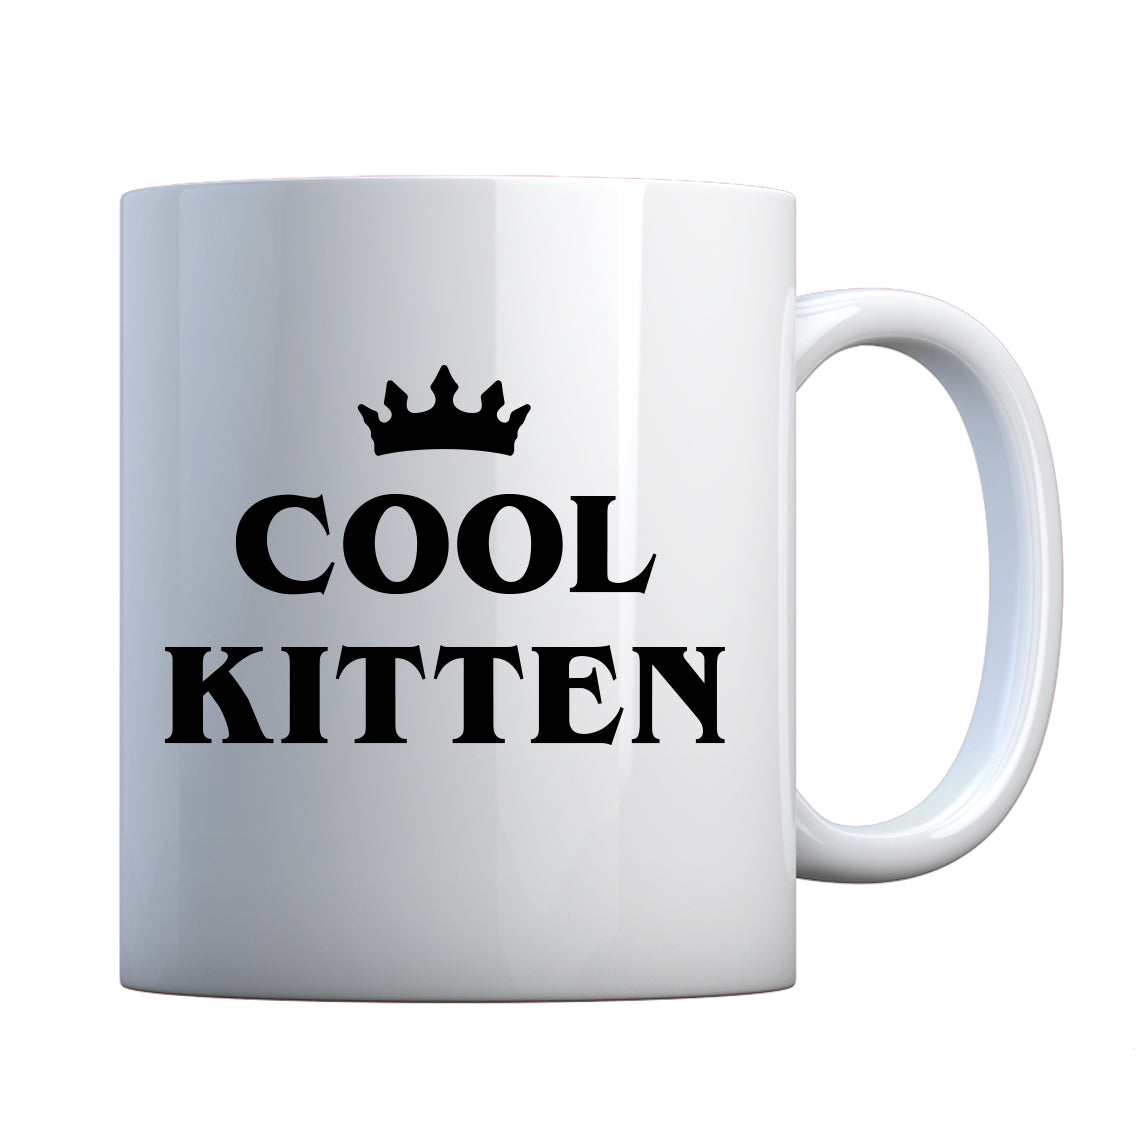 Cool Kitten Ceramic Gift Mug